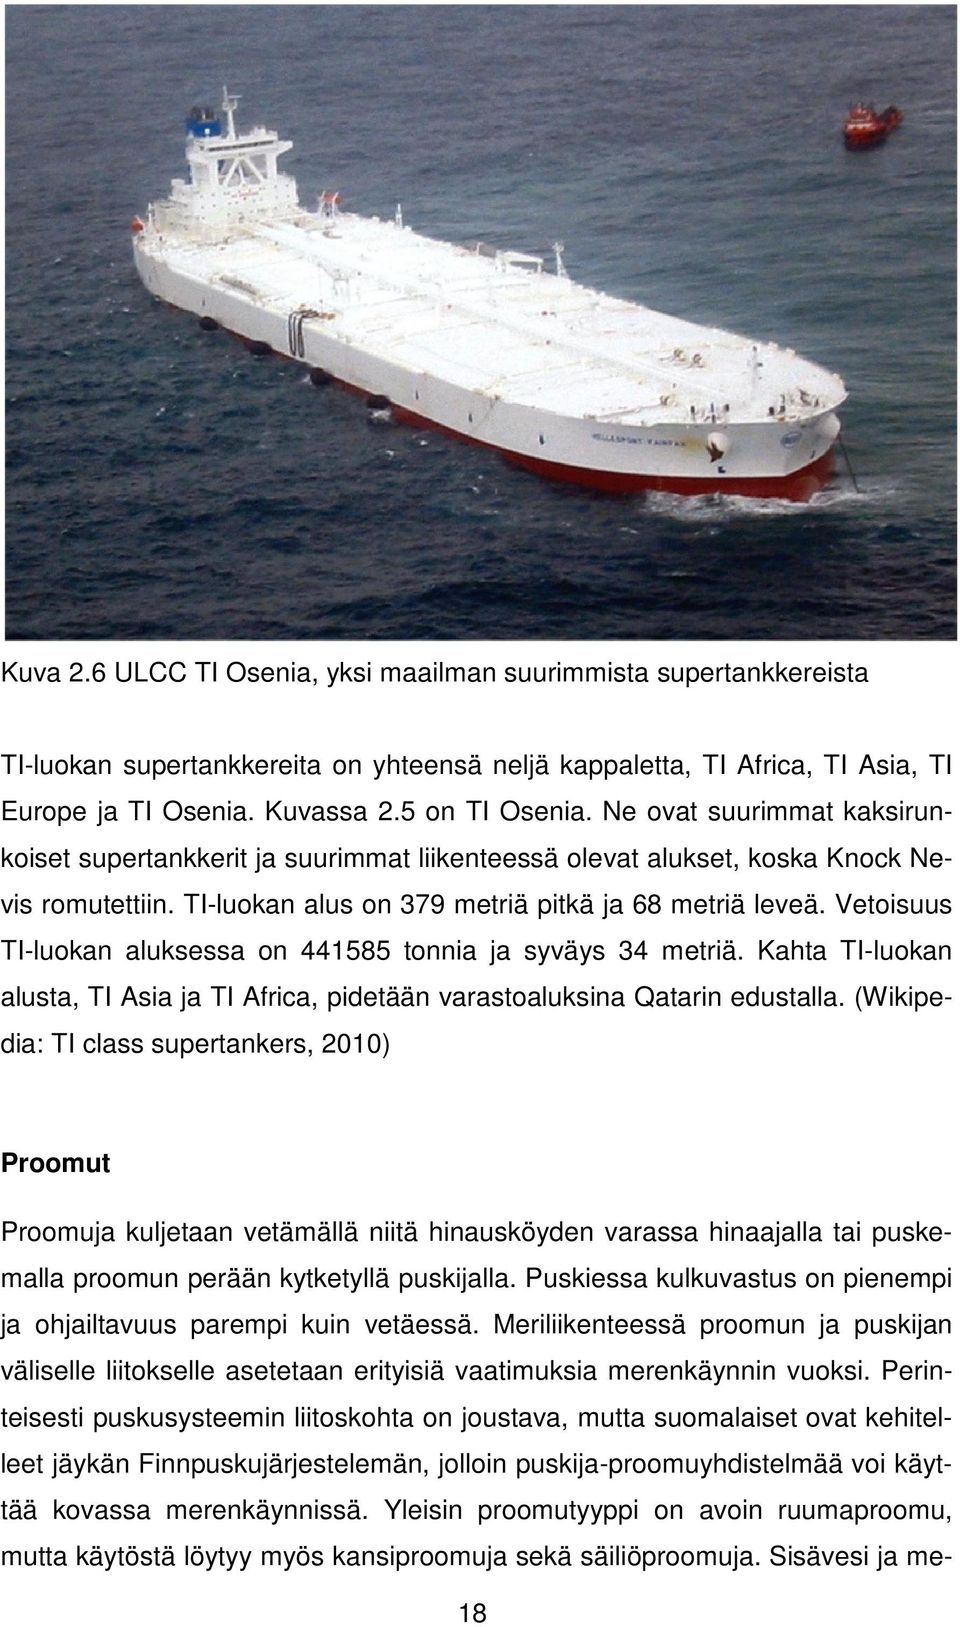 Vetoisuus TI-luokan aluksessa on 441585 tonnia ja syväys 34 metriä. Kahta TI-luokan alusta, TI Asia ja TI Africa, pidetään varastoaluksina Qatarin edustalla.